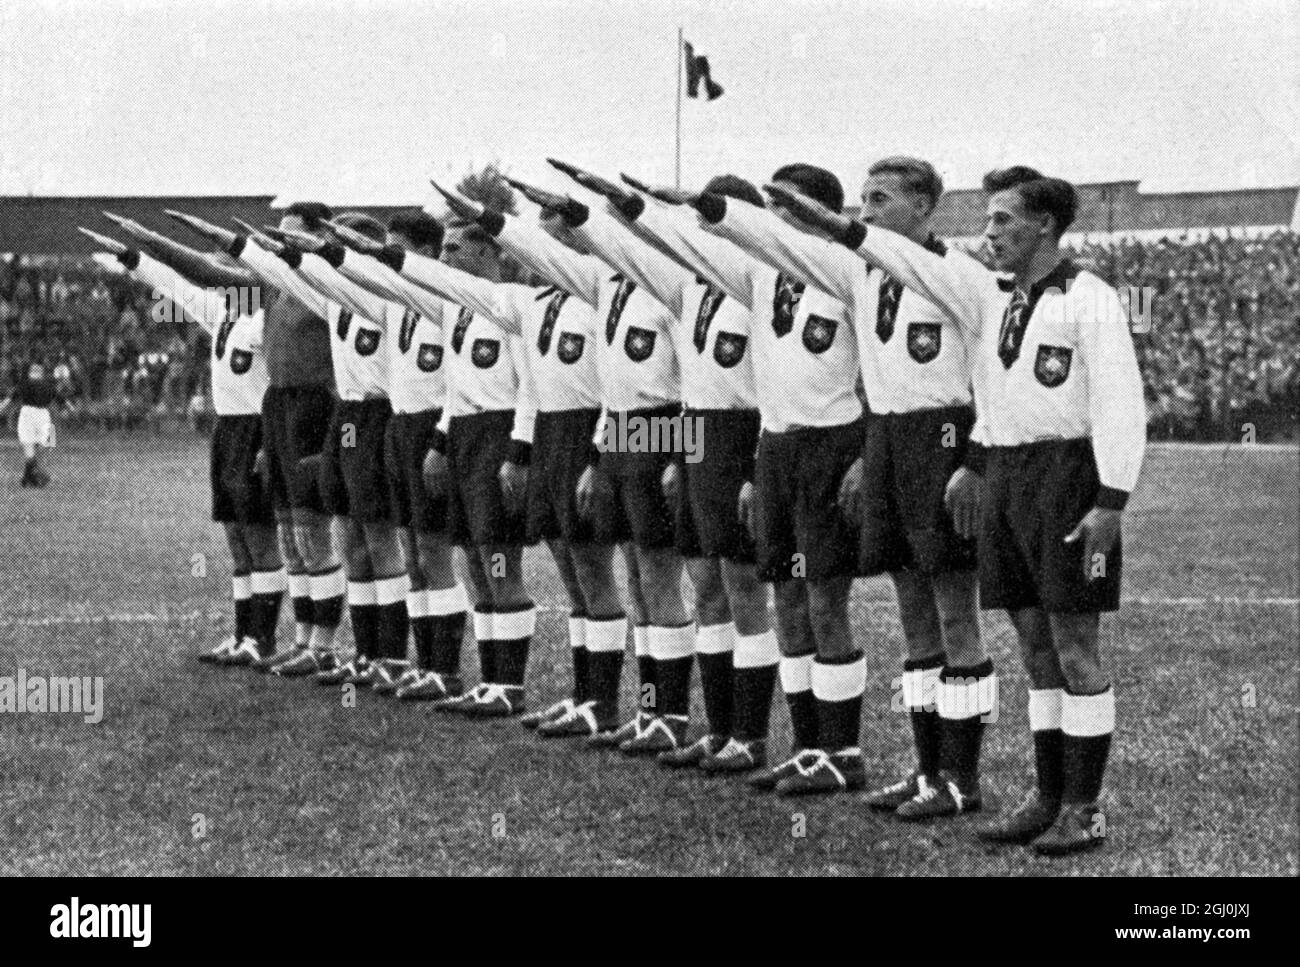 1936 Jeux Olympiques, Berlin - équipes de football du monde entier - Allemagne Fussballmannschaften aus aller Welt - Deutschland ©TopFoto Banque D'Images